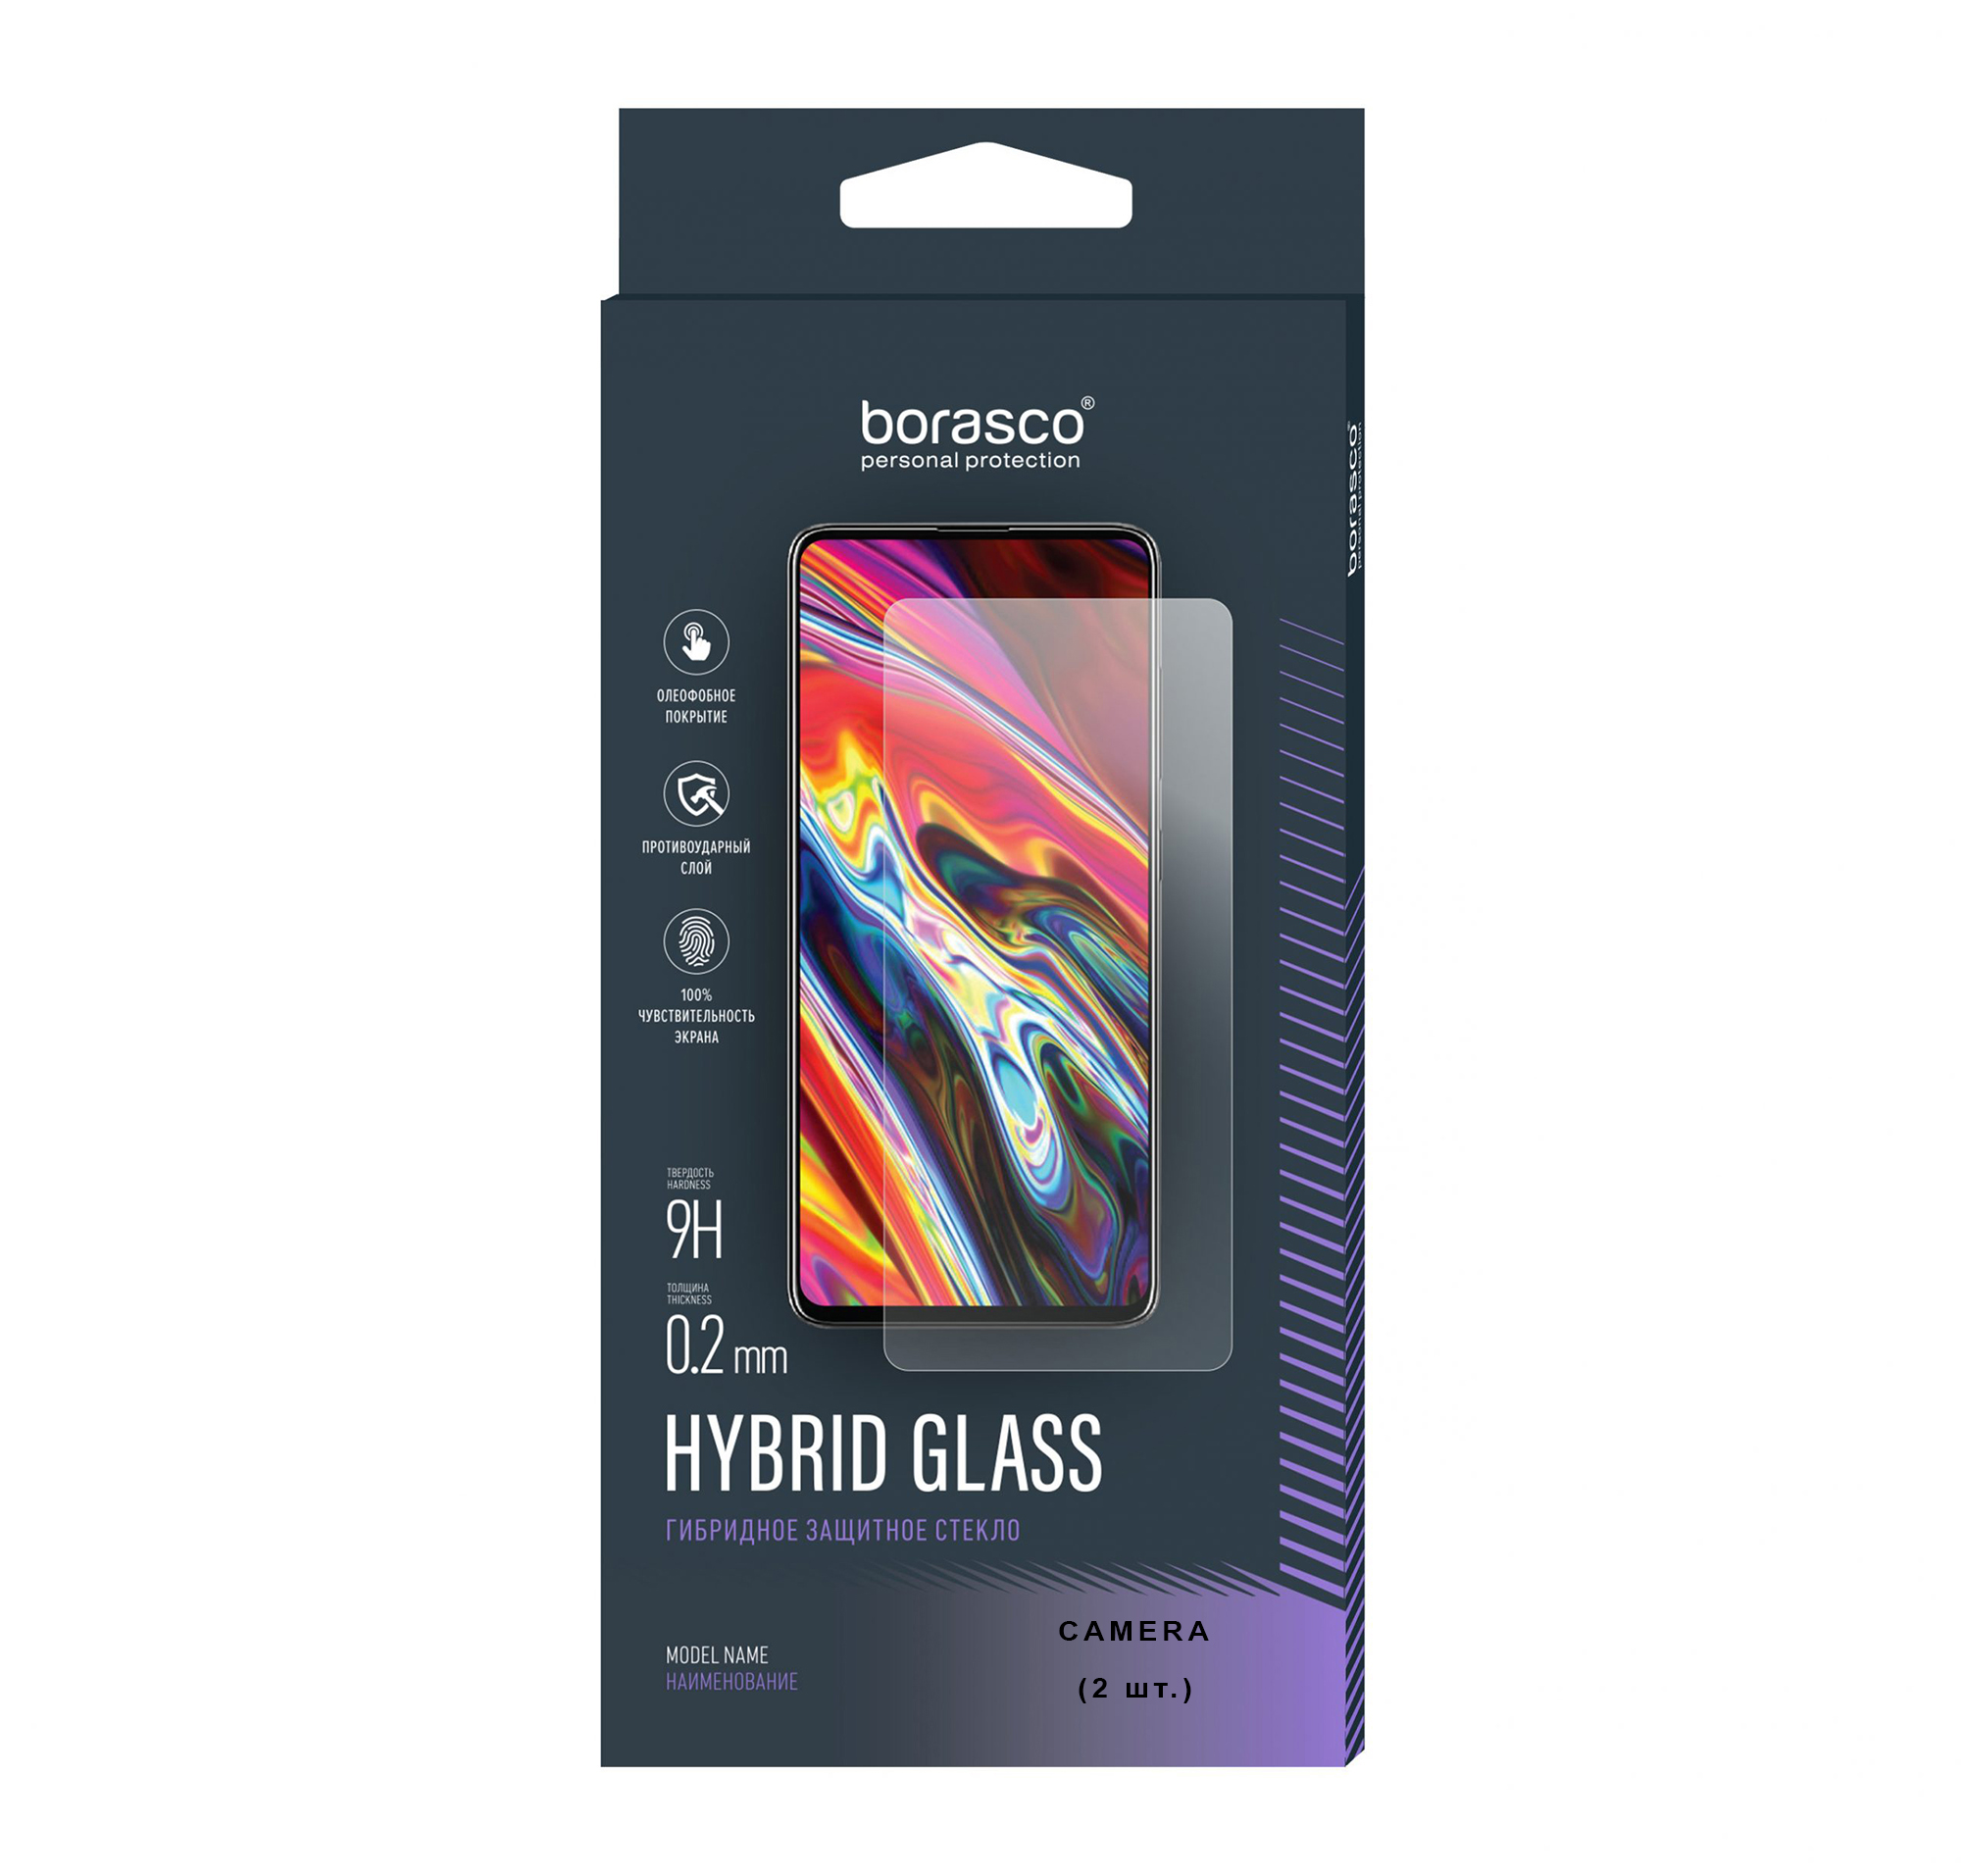 Защитное стекло (Экран+Камера) Hybrid Glass для Vivo V17 Neo чехол кобура mypads pochette для vivo v17